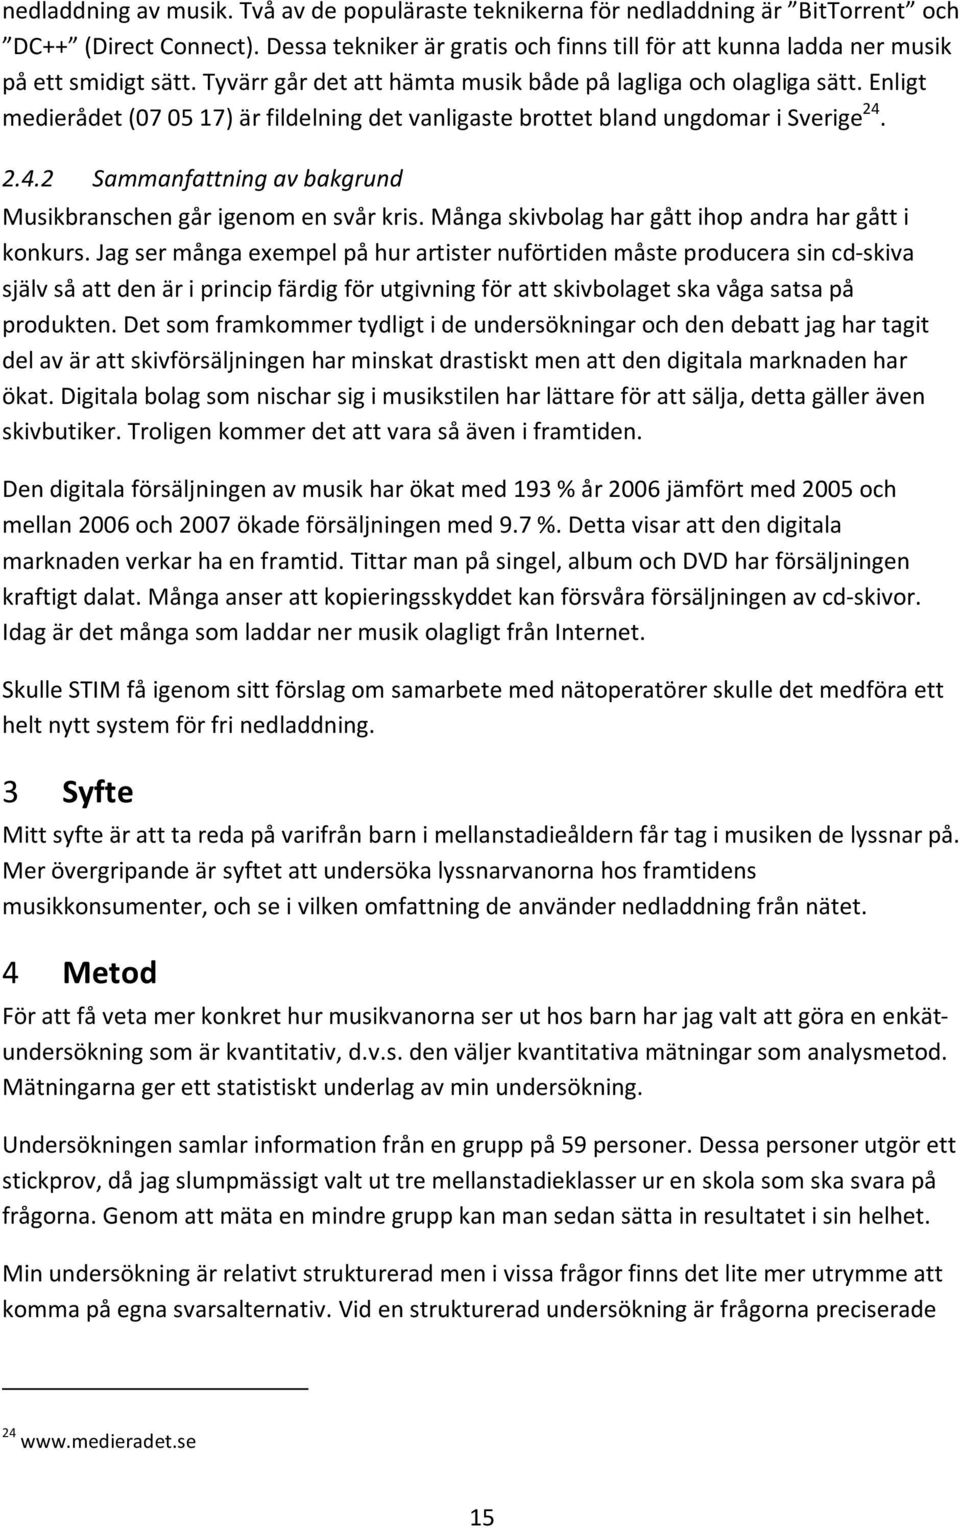 Enligt medierådet (07 05 17) är fildelning det vanligaste brottet bland ungdomar i Sverige 24. 2.4.2 Sammanfattning av bakgrund Musikbranschen går igenom en svår kris.